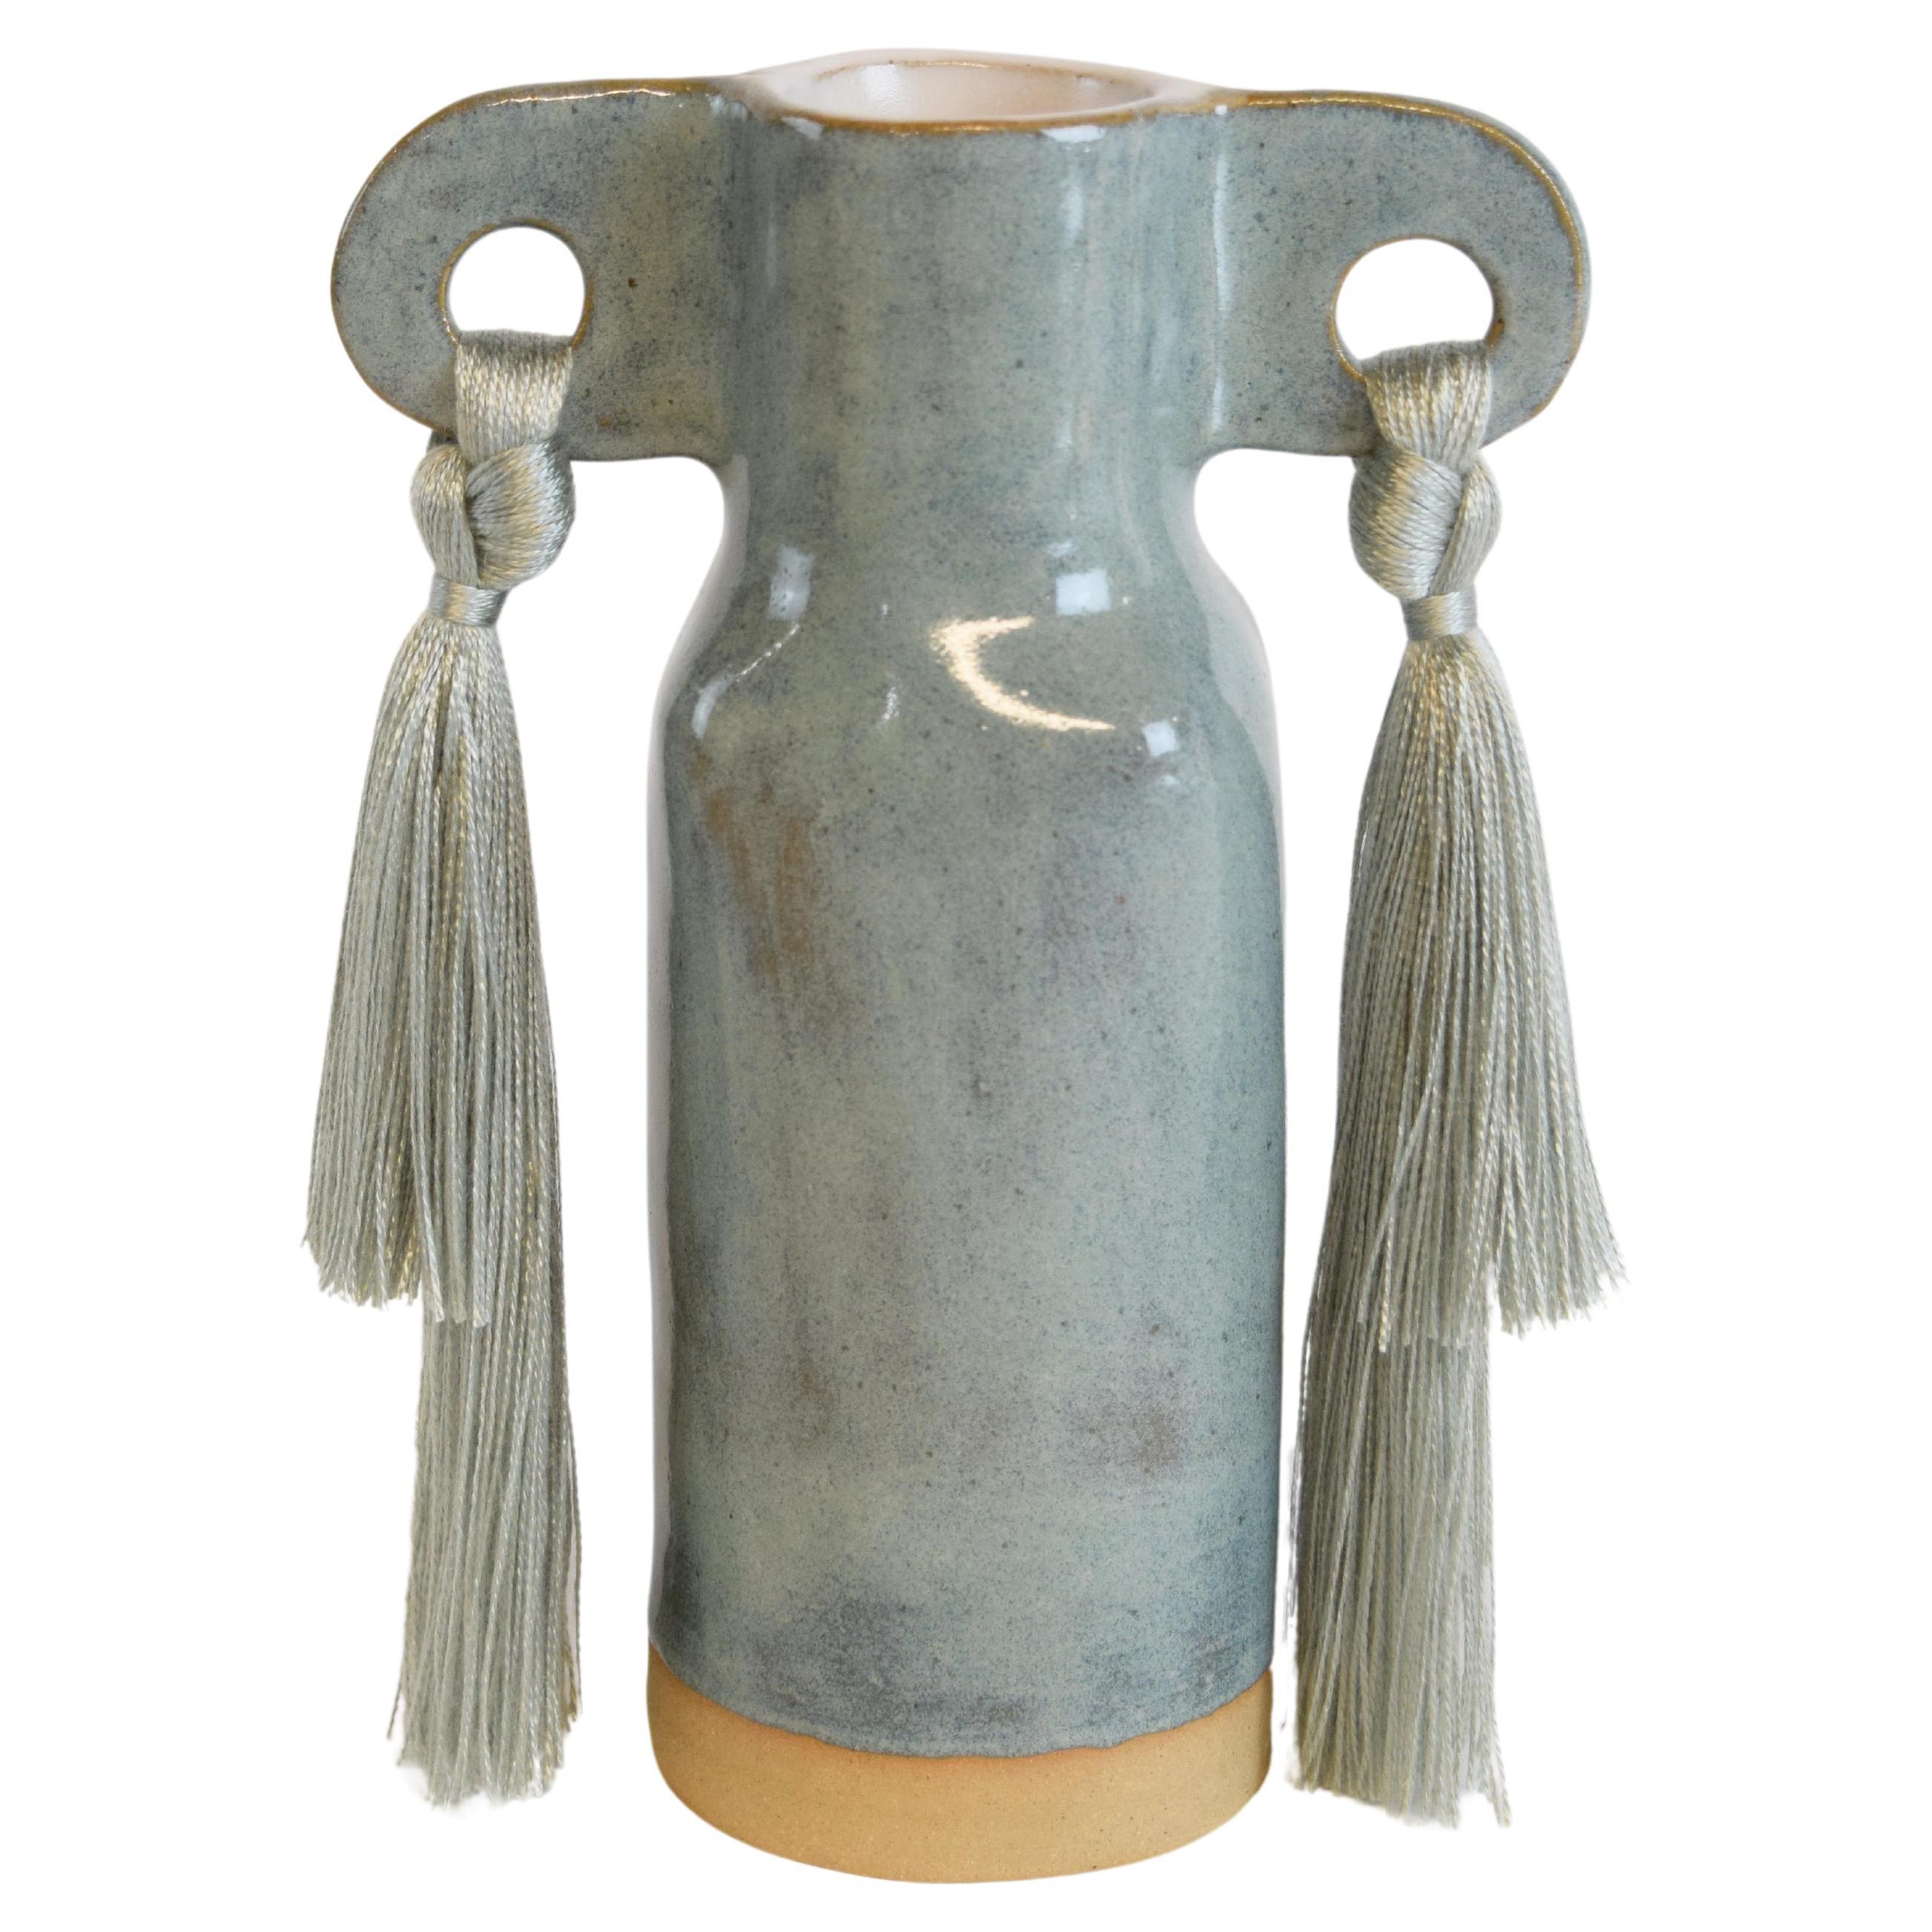 Handmade Ceramic Vase #606 Sage - Pale Green Glaze with Tencel Fringe Details For Sale